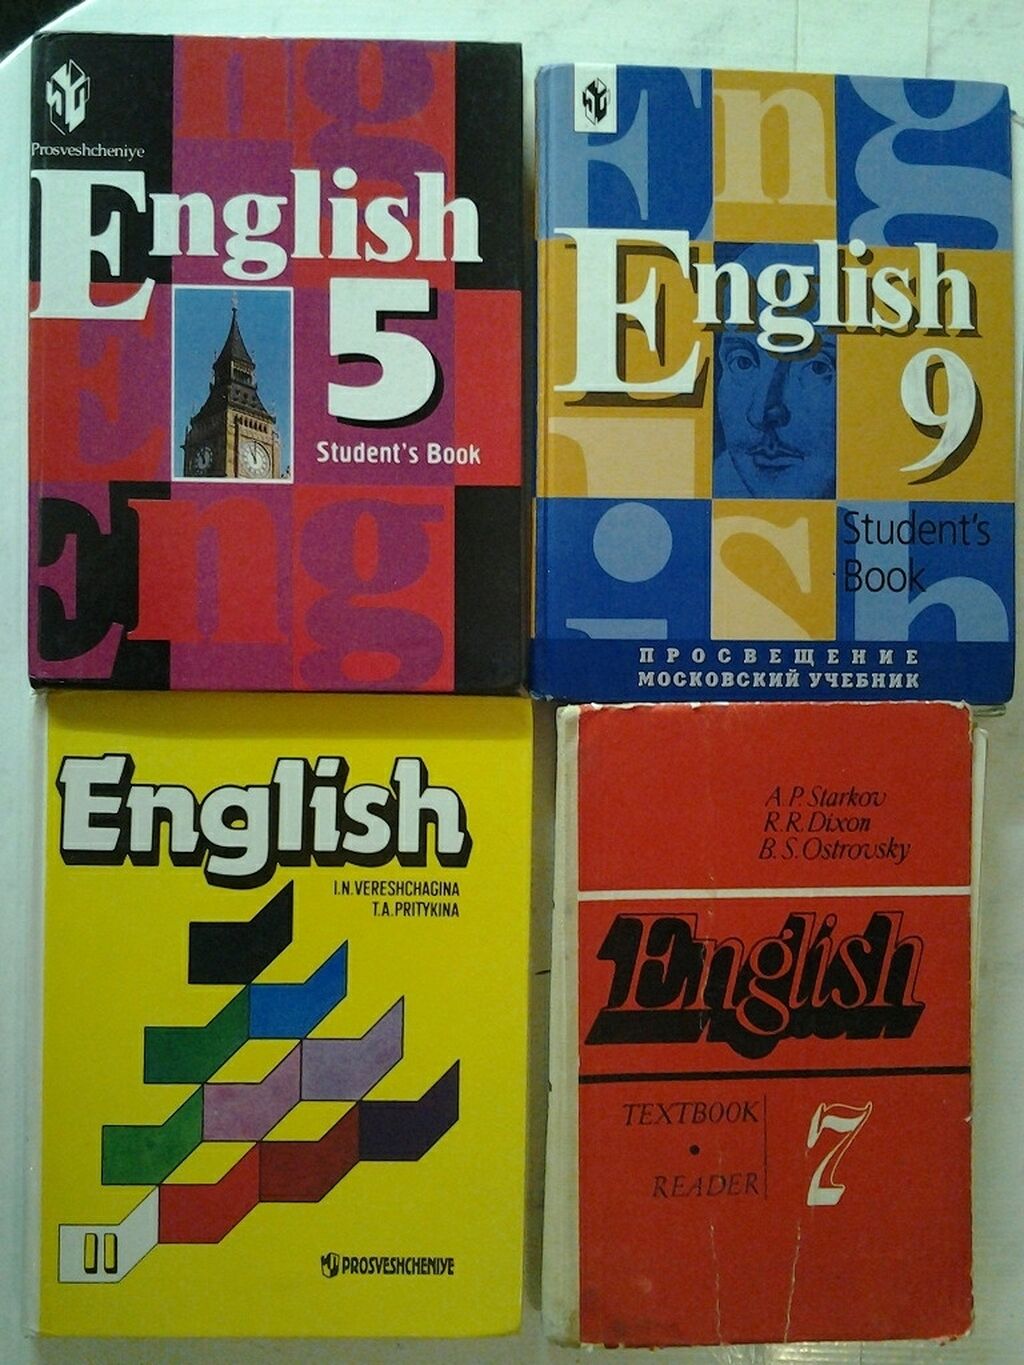 Английский учебник. Учебник английского. Английский язык. Учебник. Школьные учебники английского языка. Школьные учебники по английскому языку.